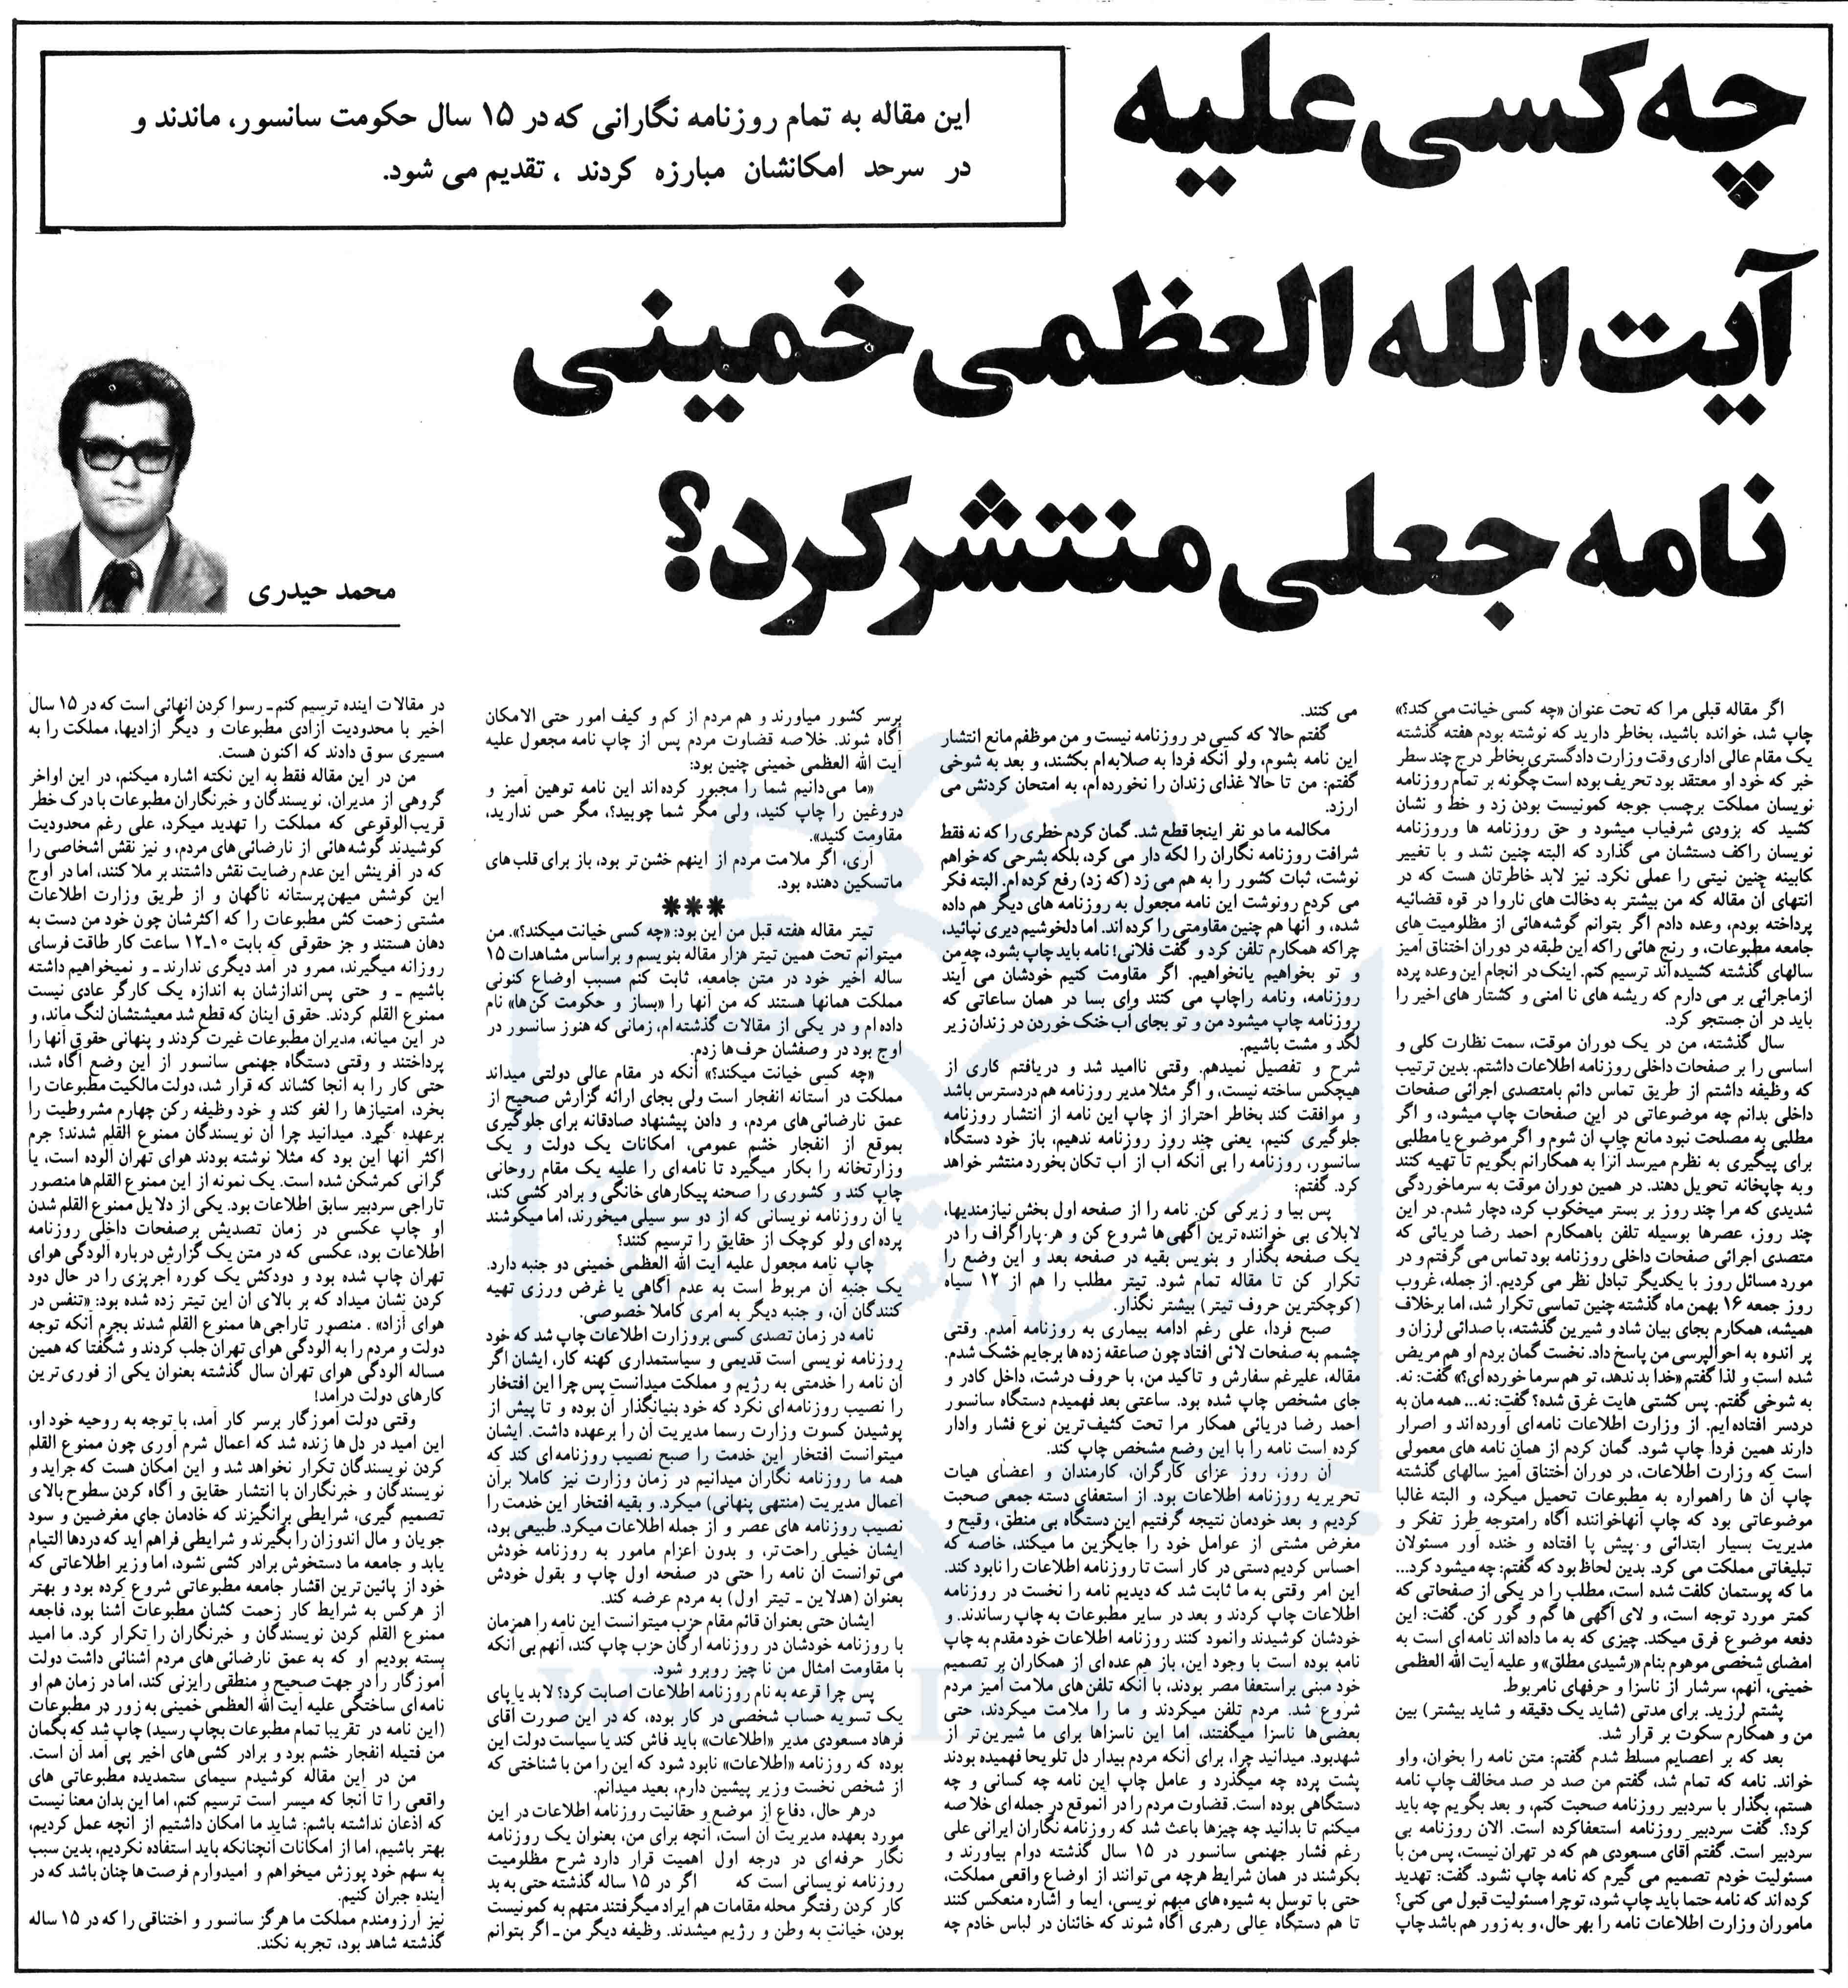 نویسنده مقاله اهانت‌آمیز به امام هنوز عضو شورای سردبیری اطلاعات است!